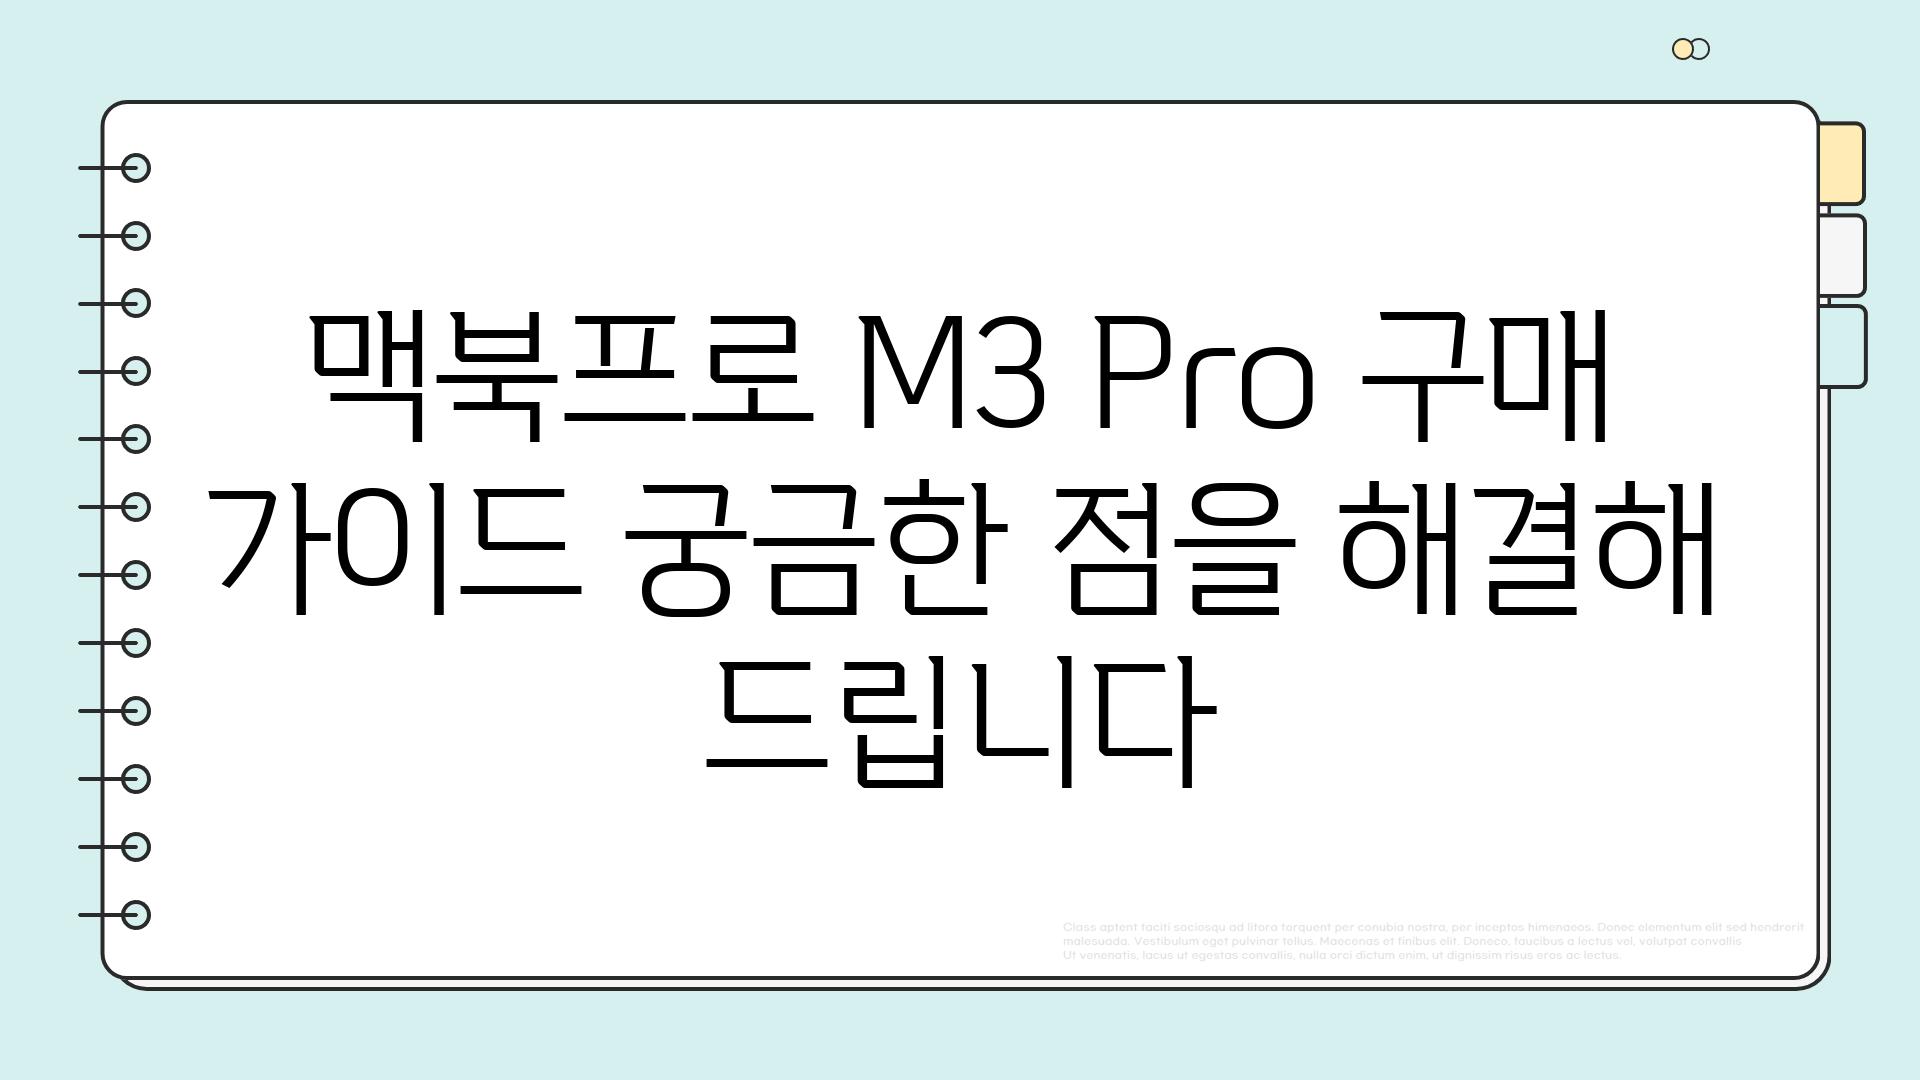 맥북프로 M3 Pro 구매 가이드 궁금한 점을 해결해 드립니다